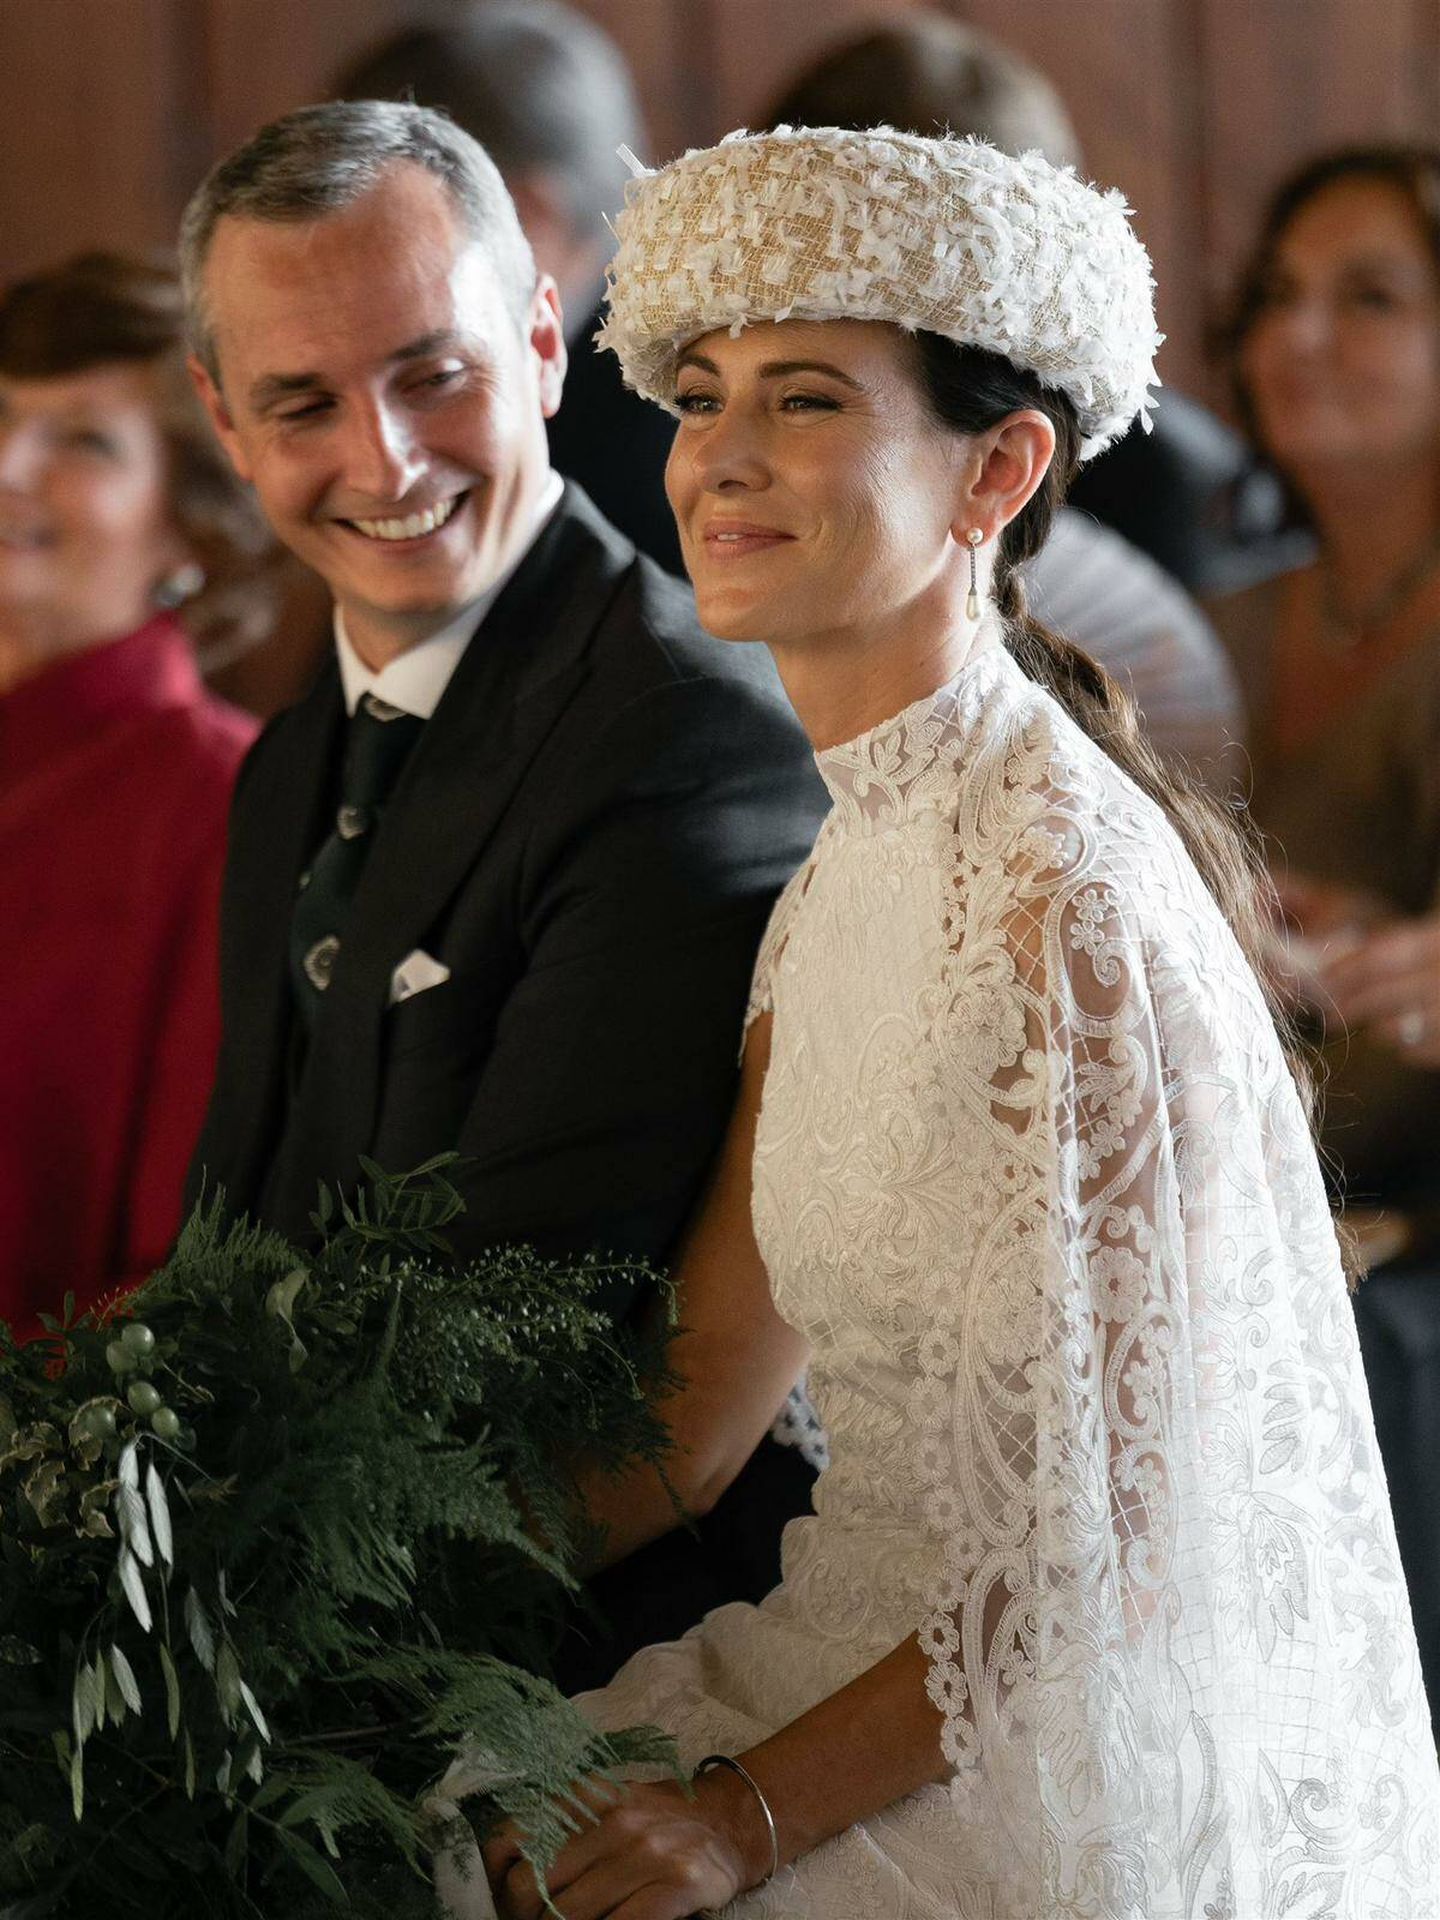 La boda de Beatriz con vestido de Helena Mareque. (Diego de Rando)